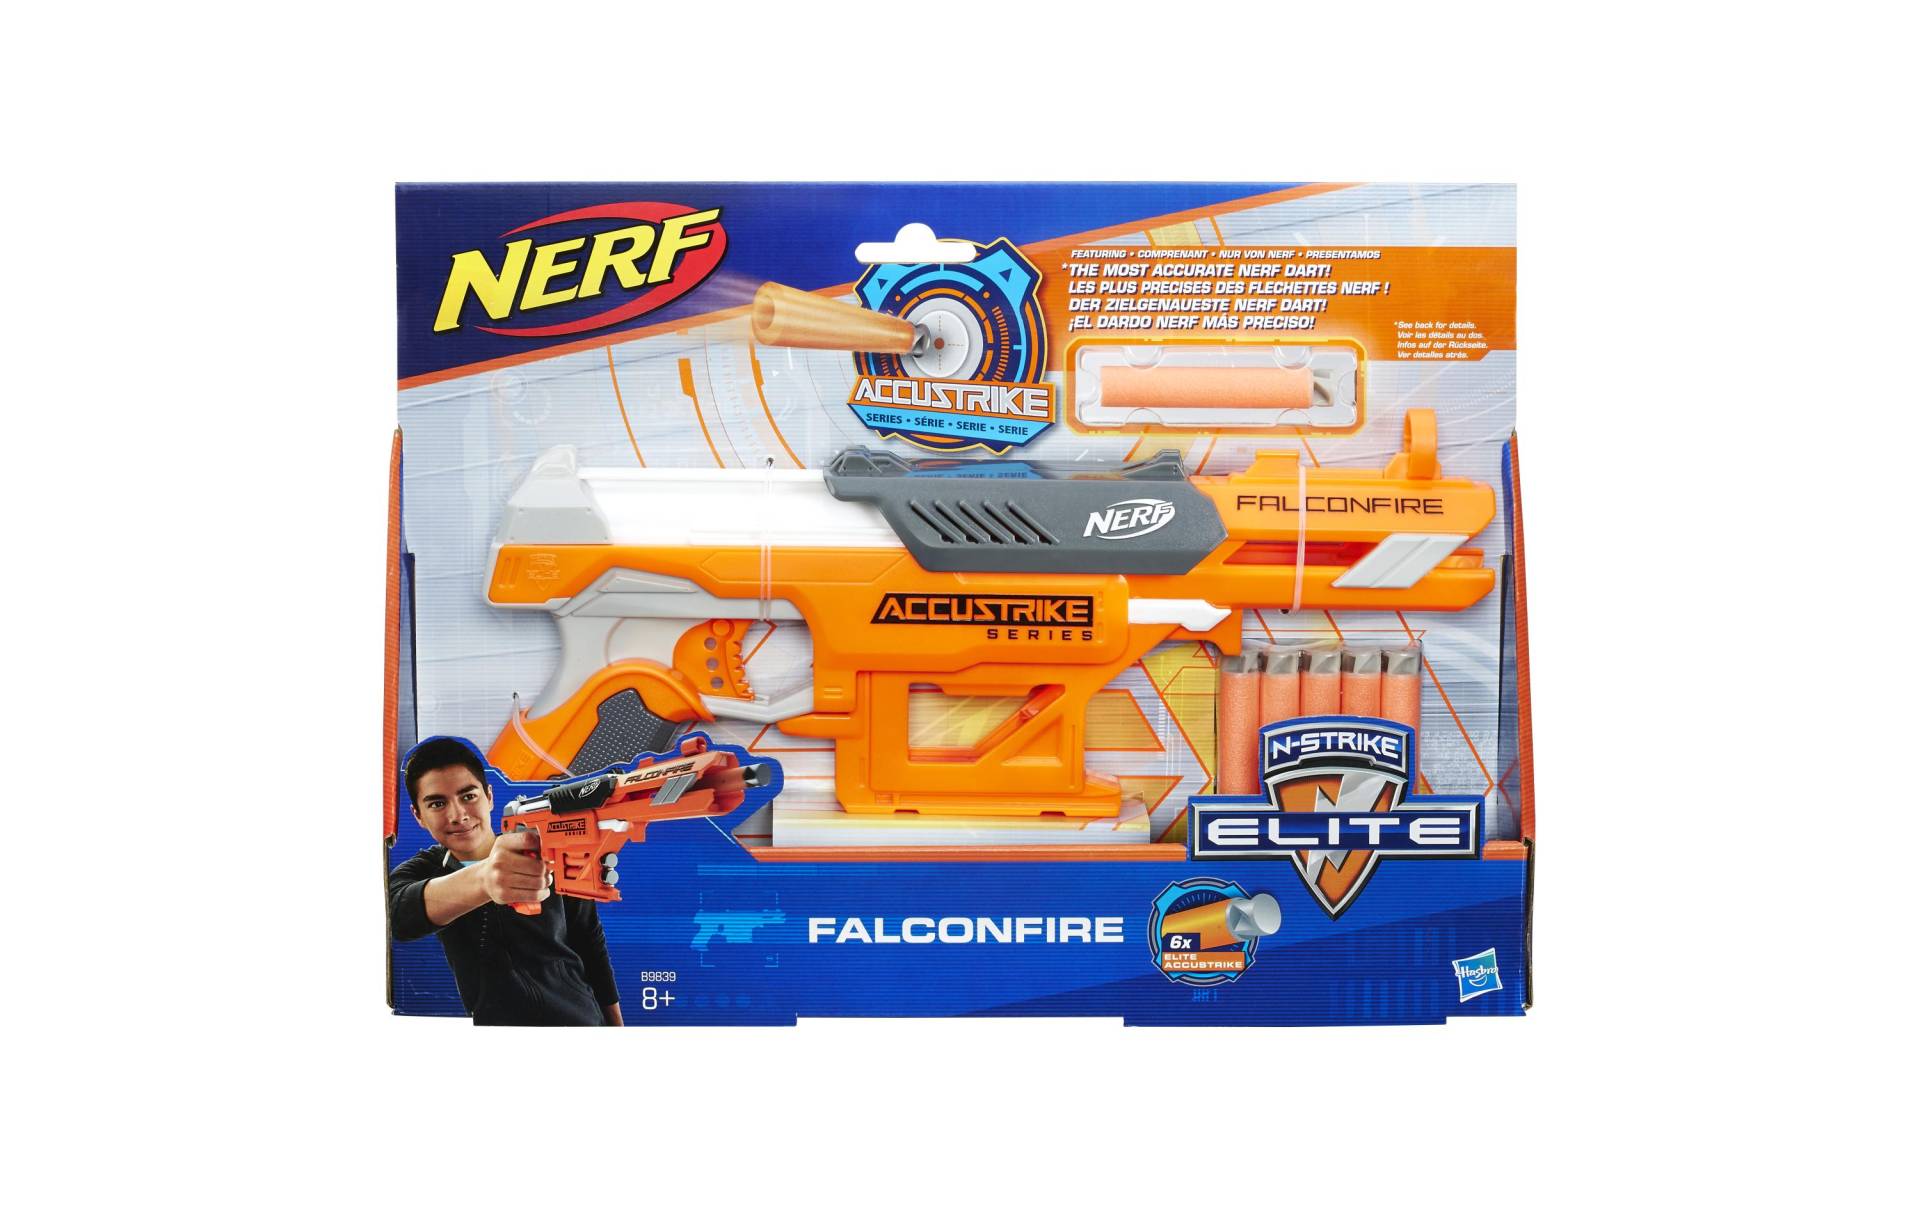 Nerf Blaster »Falconfire« von NERF